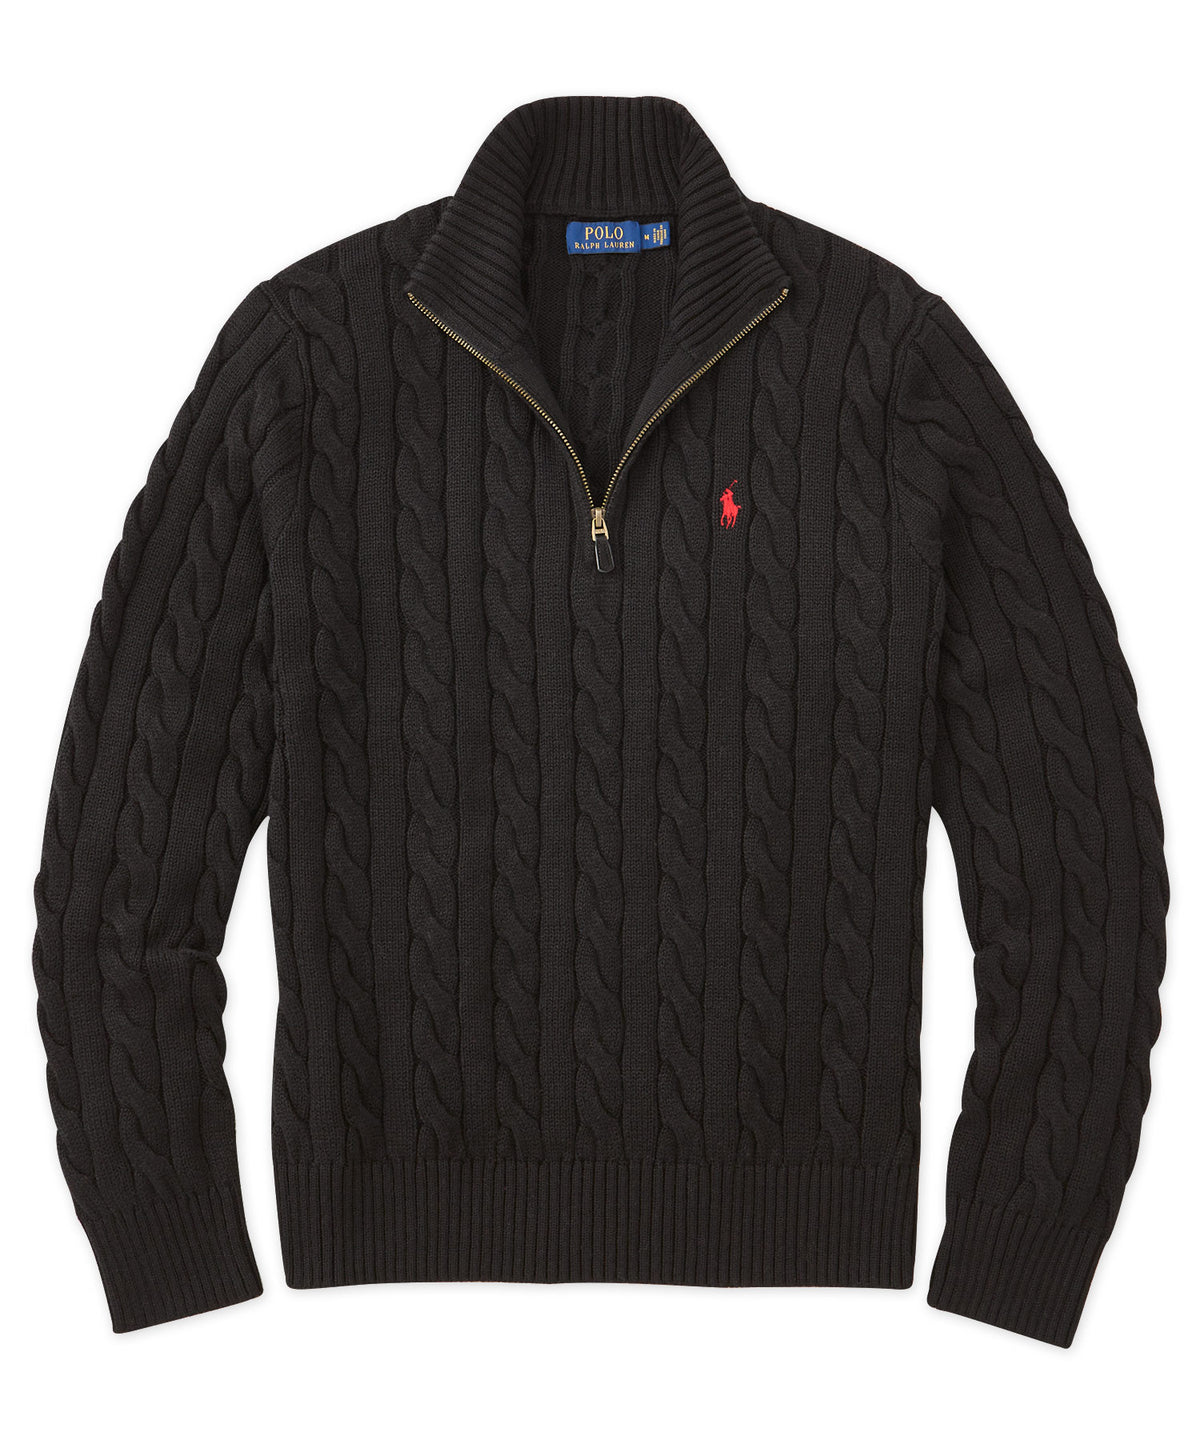 Meer dan wat dan ook Reserve Wolk Polo Ralph Lauren Cotton Cable Half-Zip Sweater - Westport Big & Tall